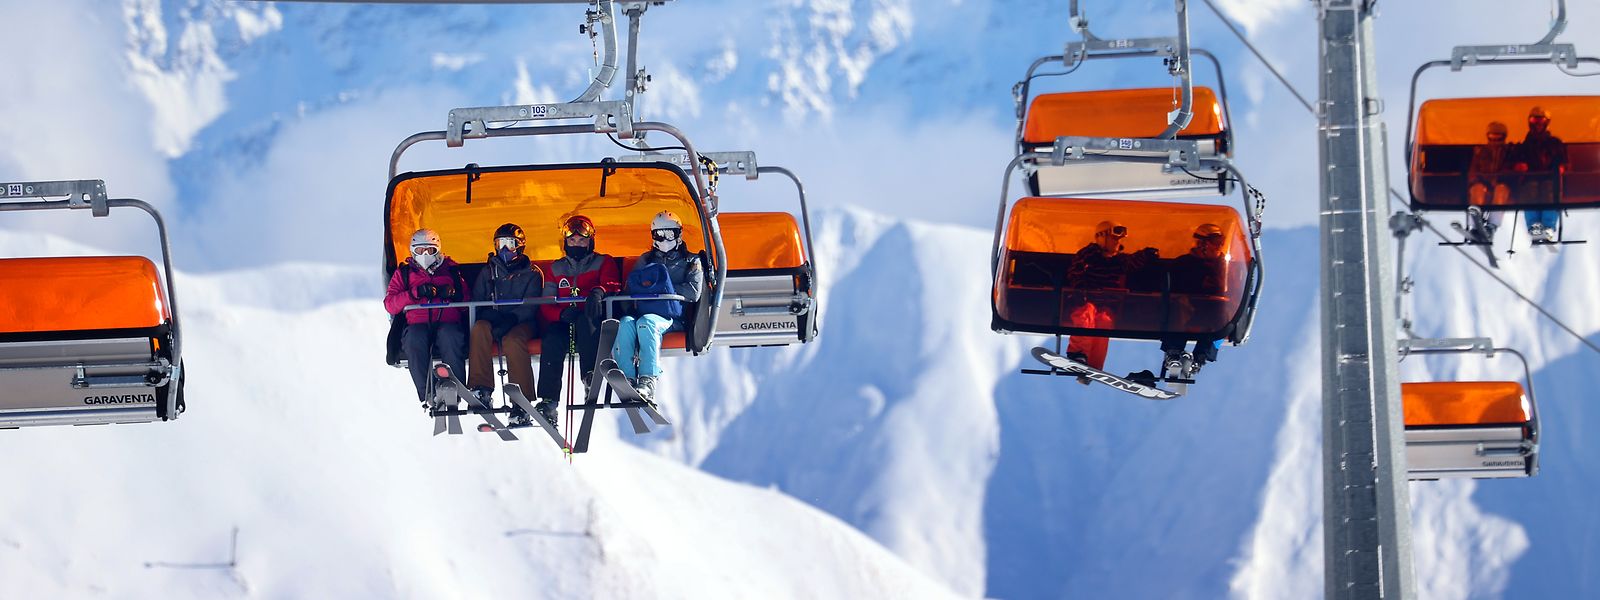 Am 3. Dezember eröffnete Ischgl während des Lockdowns in Österreich die Skisaison unter 2G-Bedingungen.  